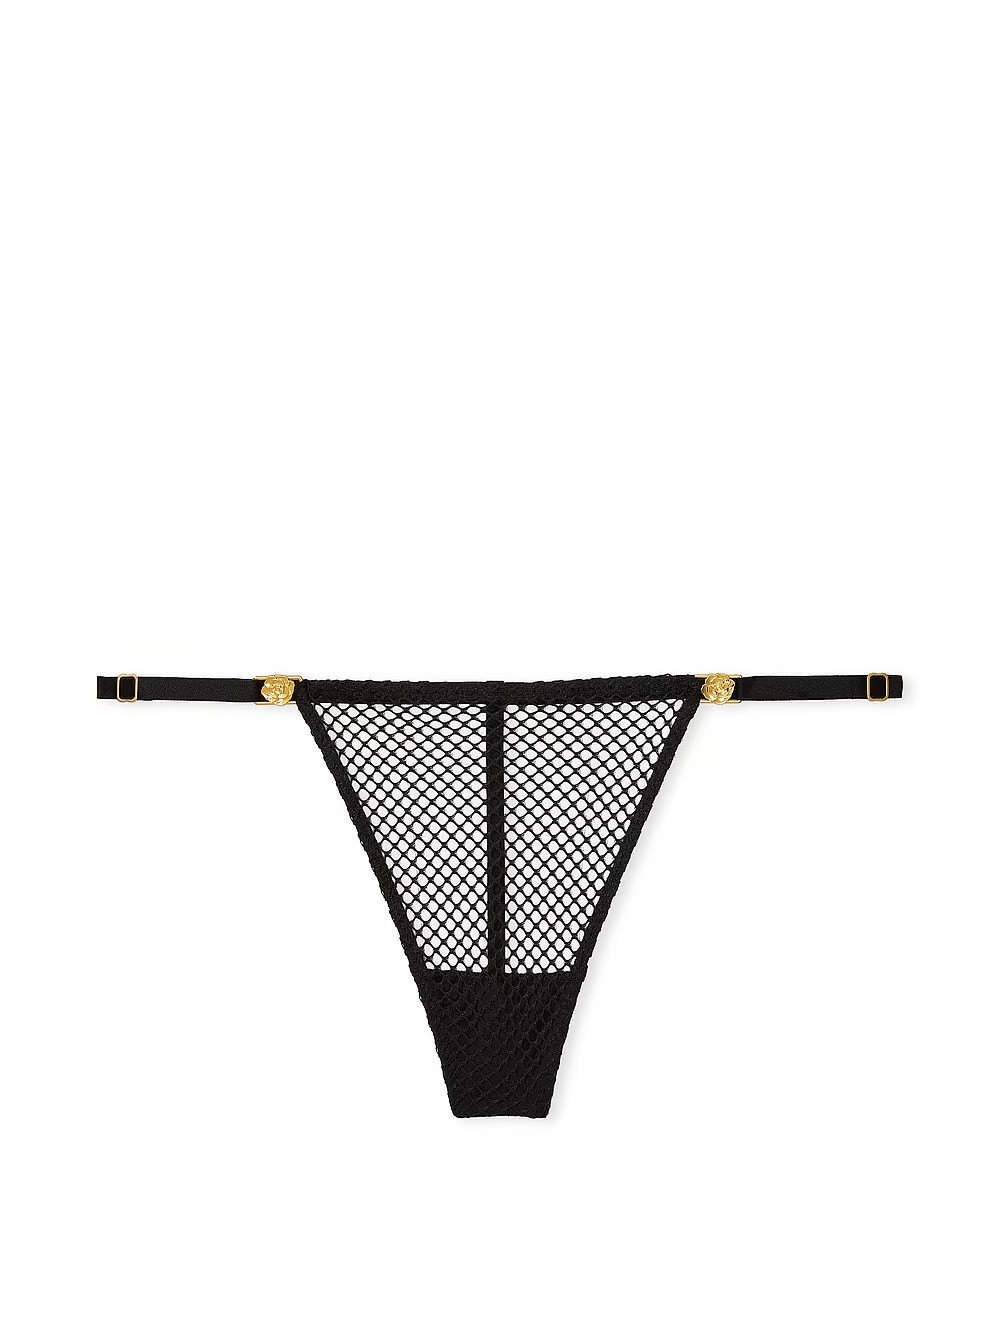 VERY SEXY Fishnet Adjustable V-String Panty